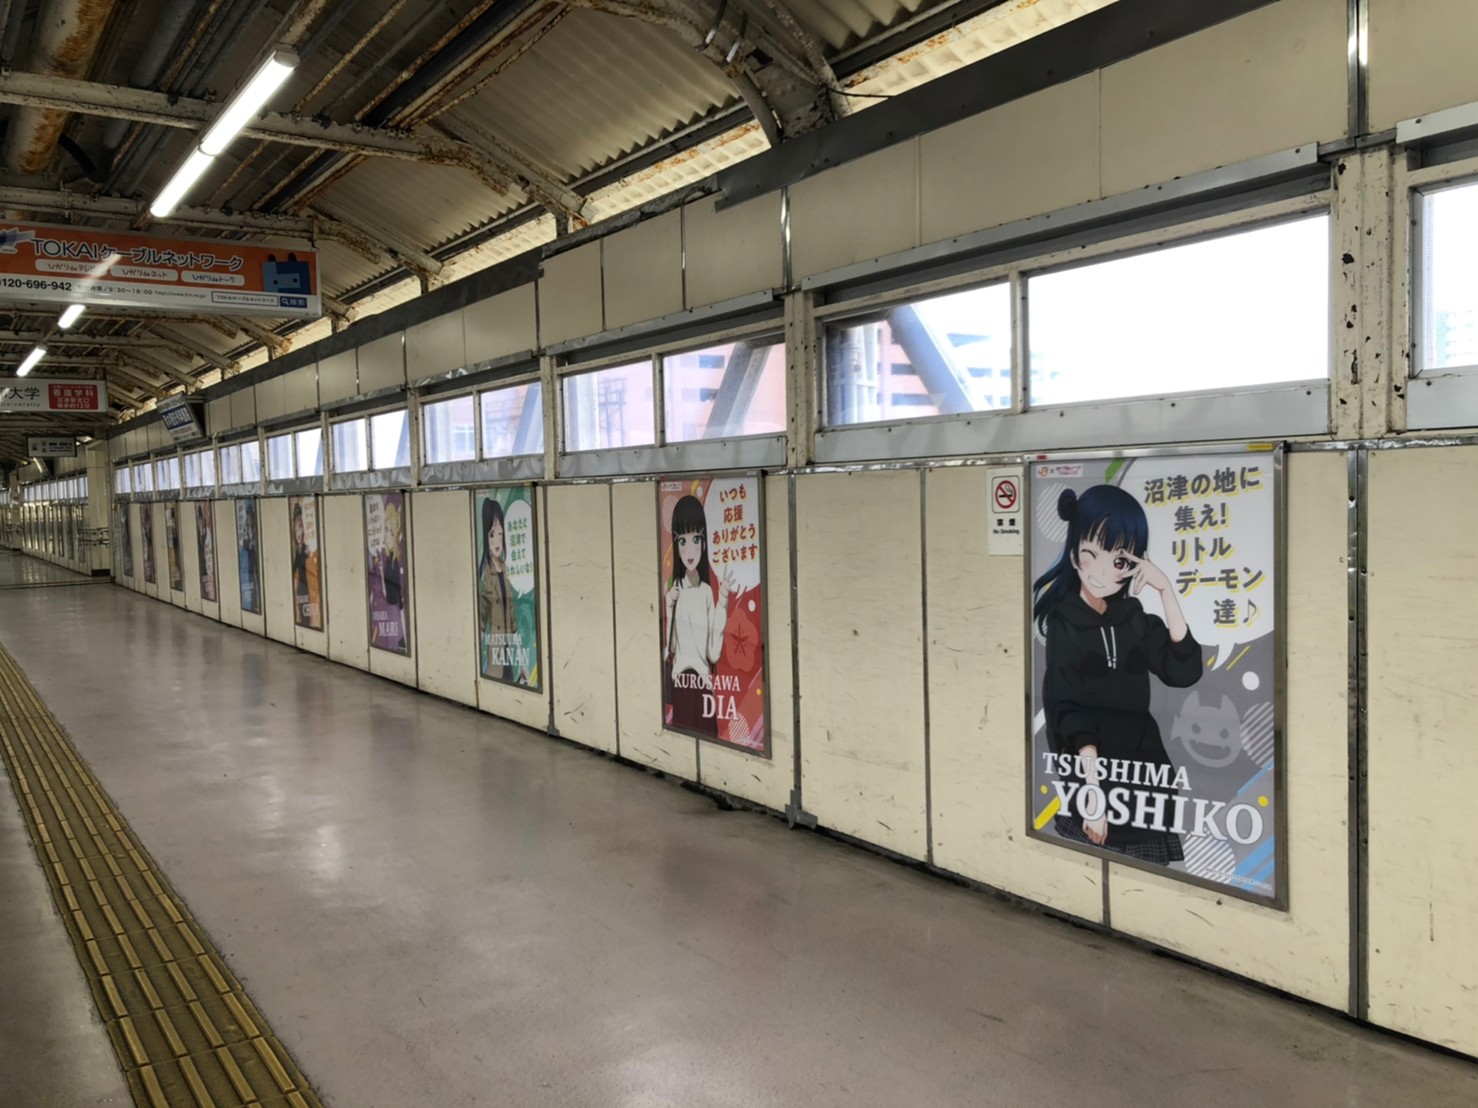 沼津駅 跨線橋に貼られたポスター